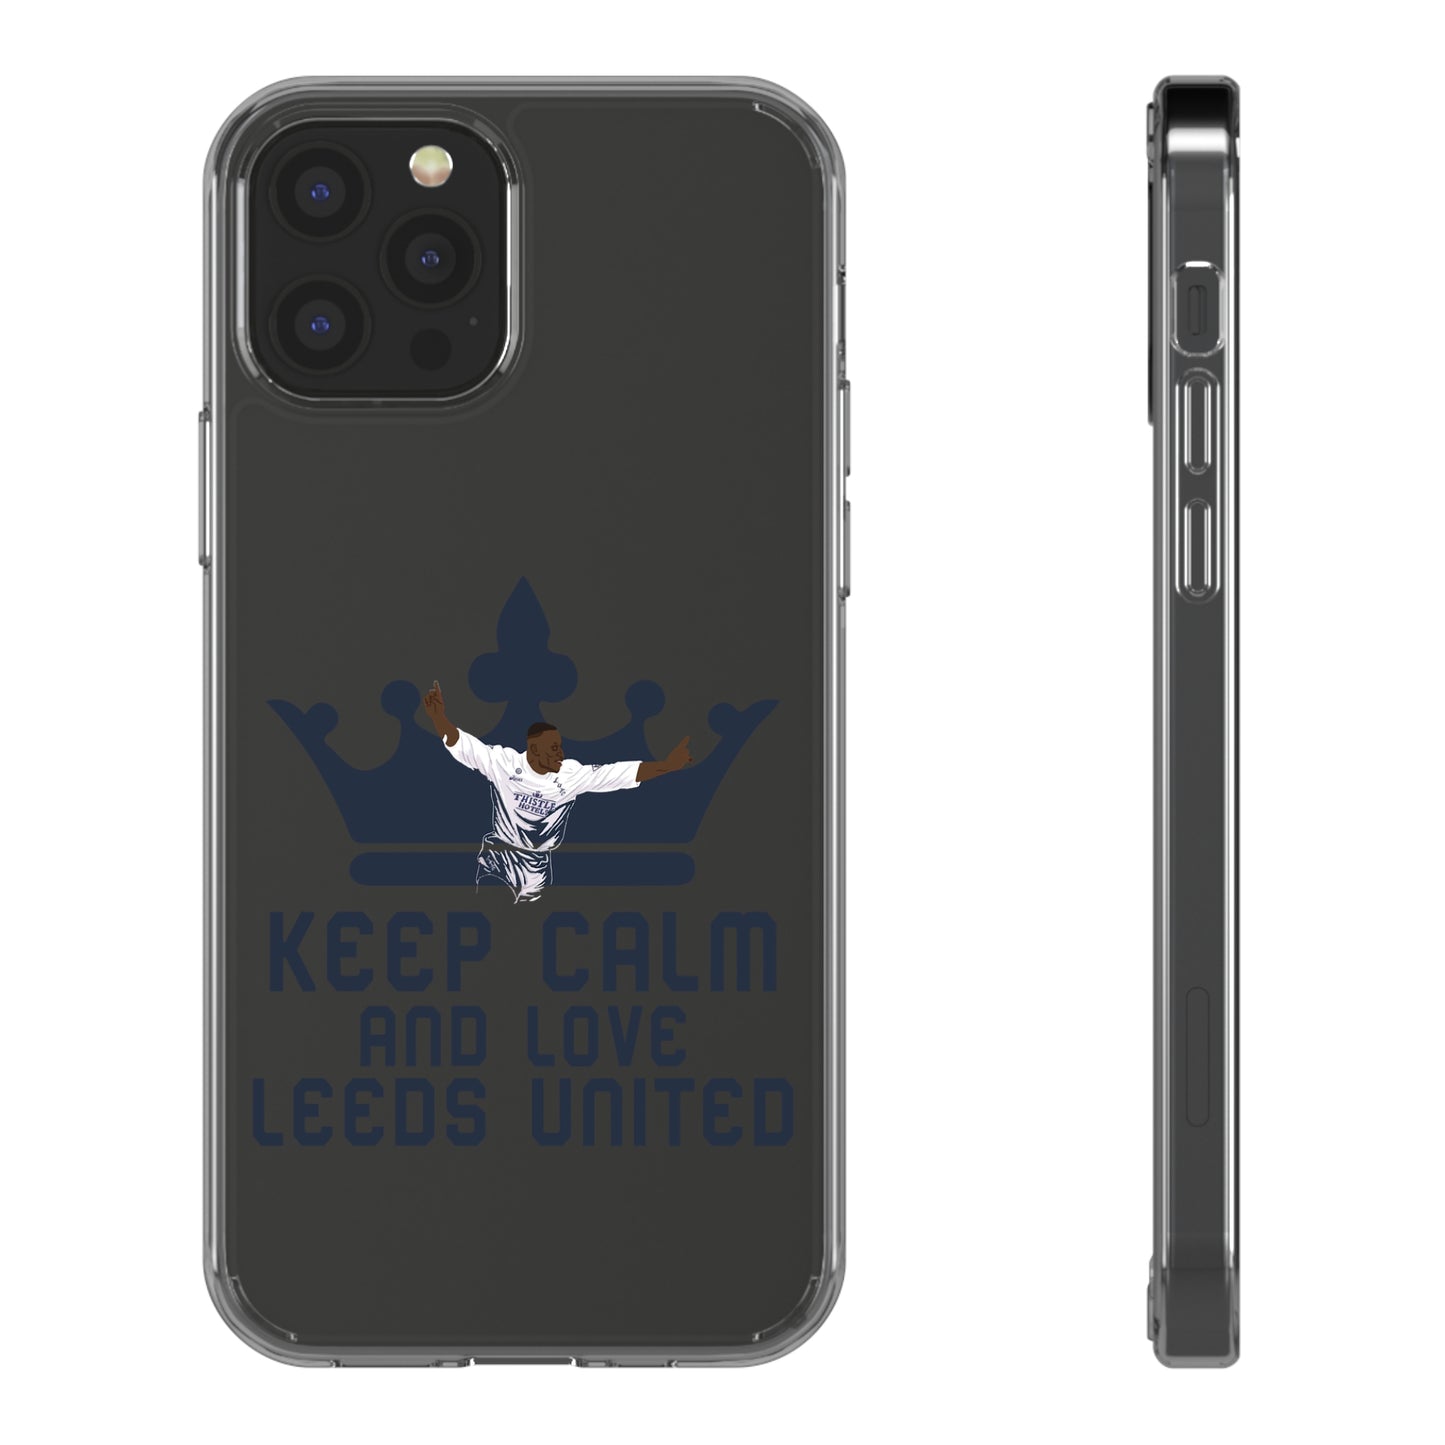 Genomskinligt telefonfodral -
 "Behåll lugnet och älska Leeds United"